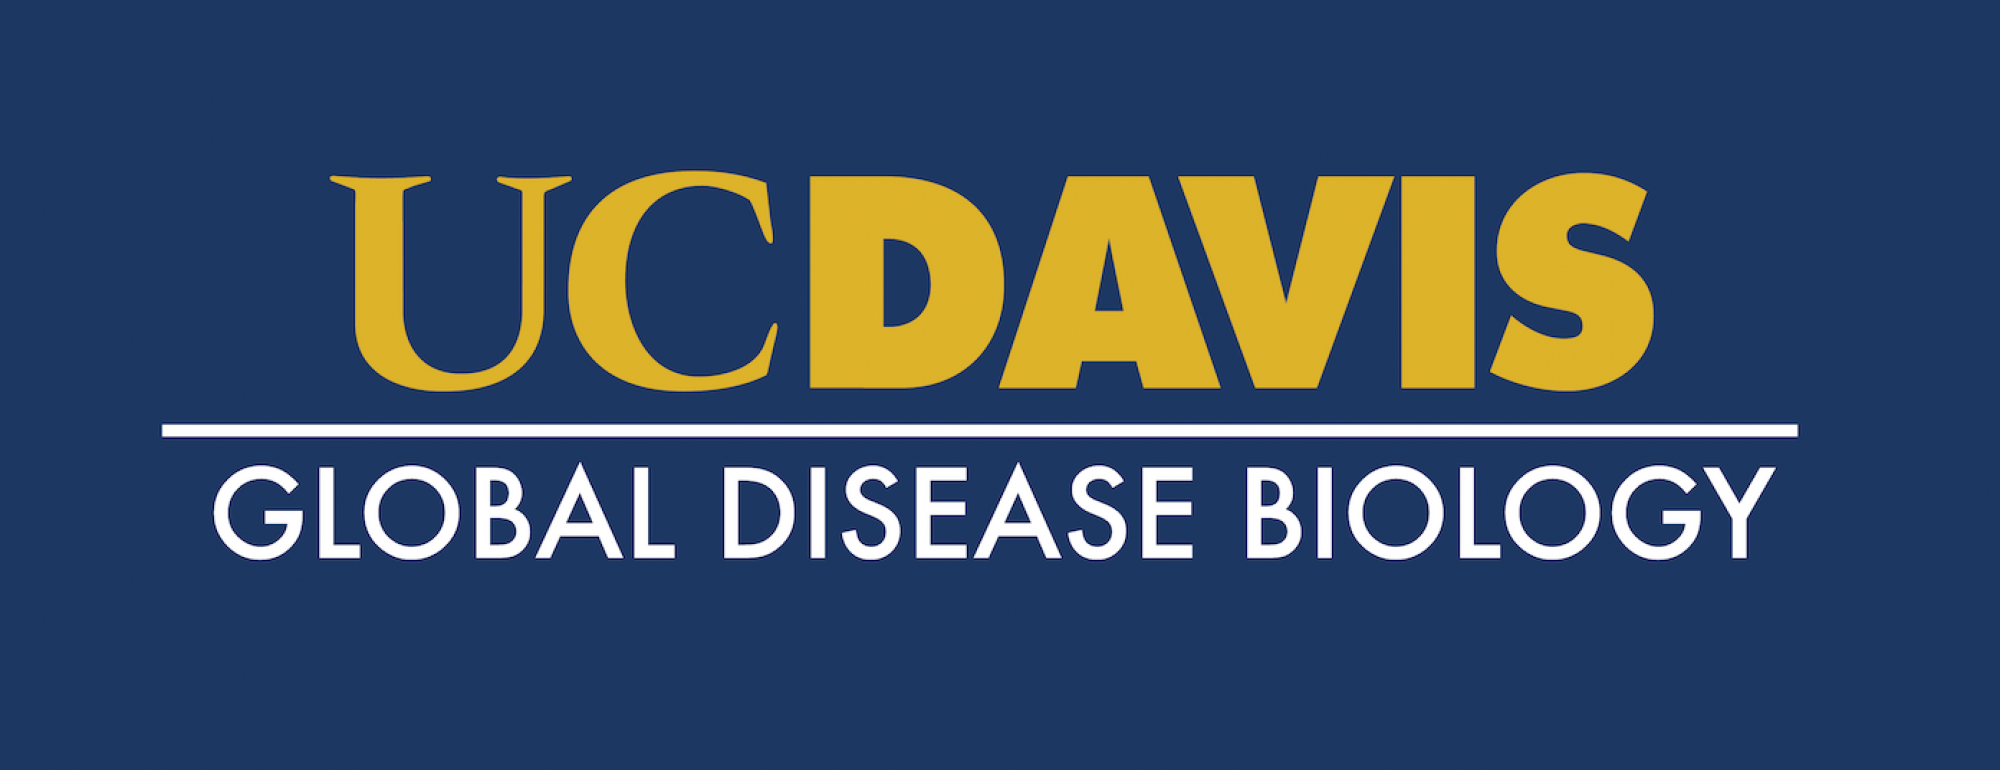 Global Disease Biology